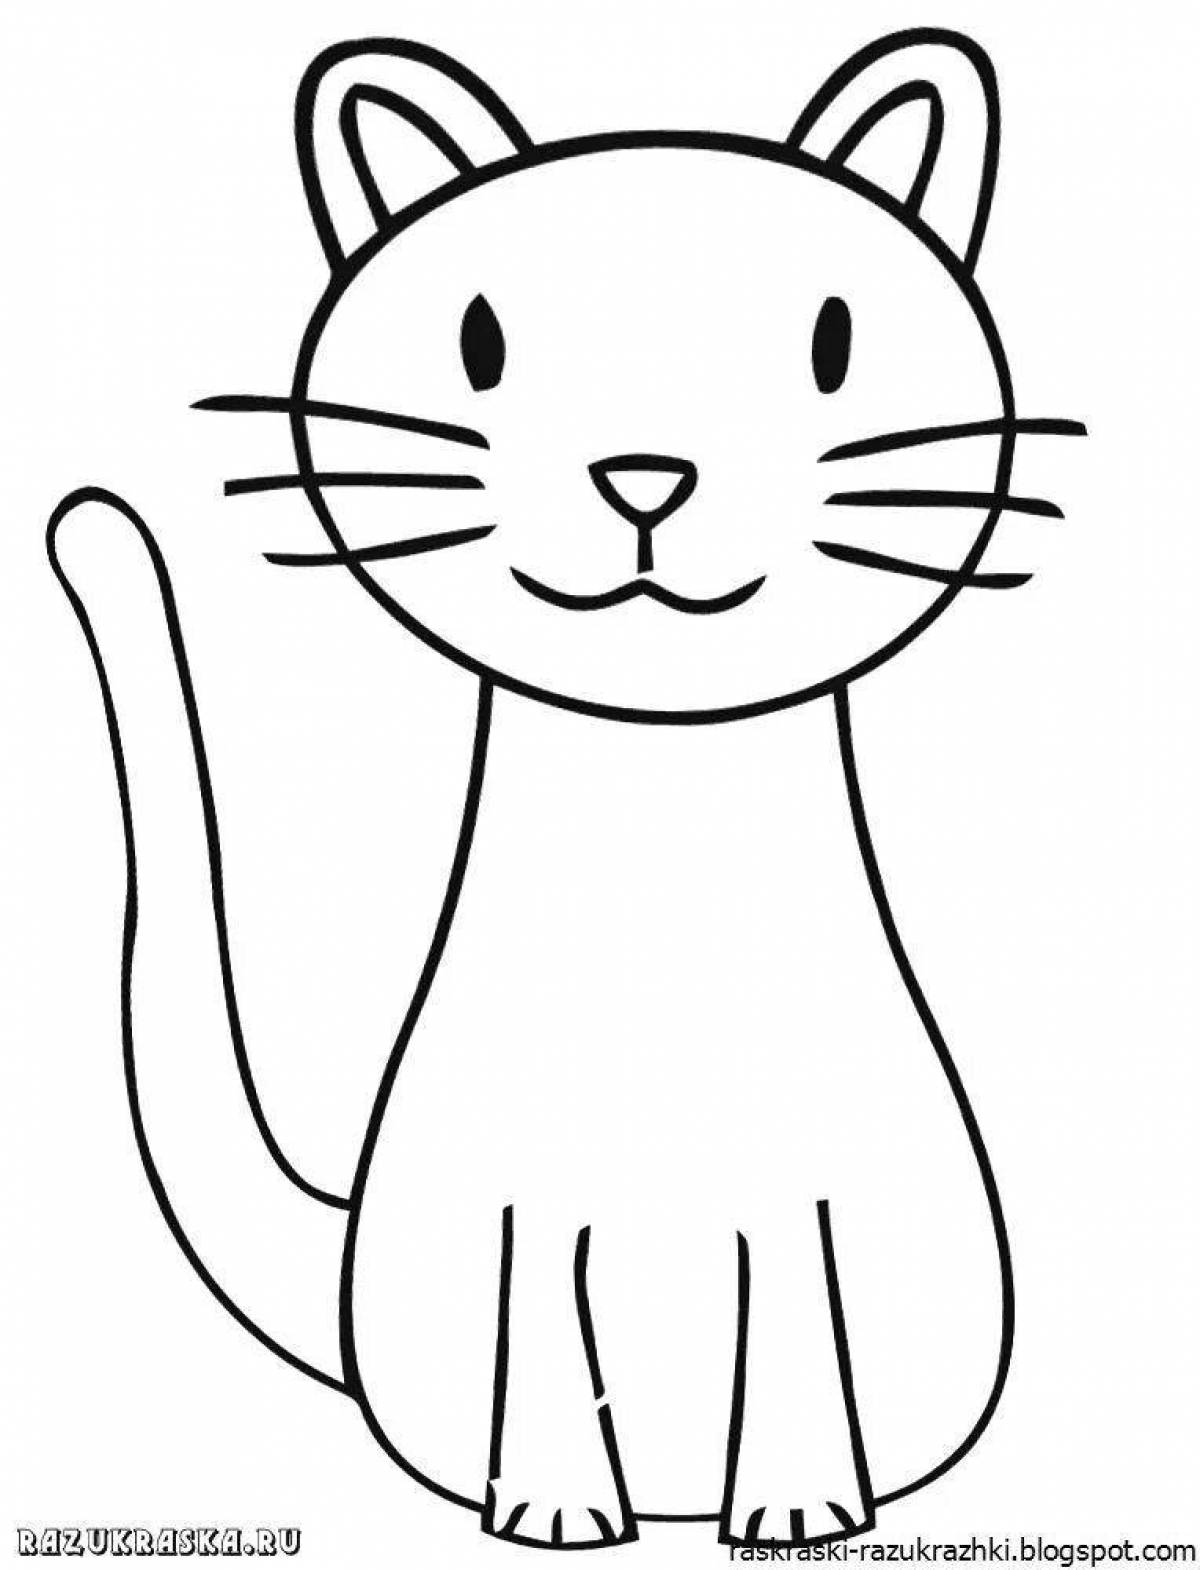 Веселая раскраска кот для детей 4-5 лет